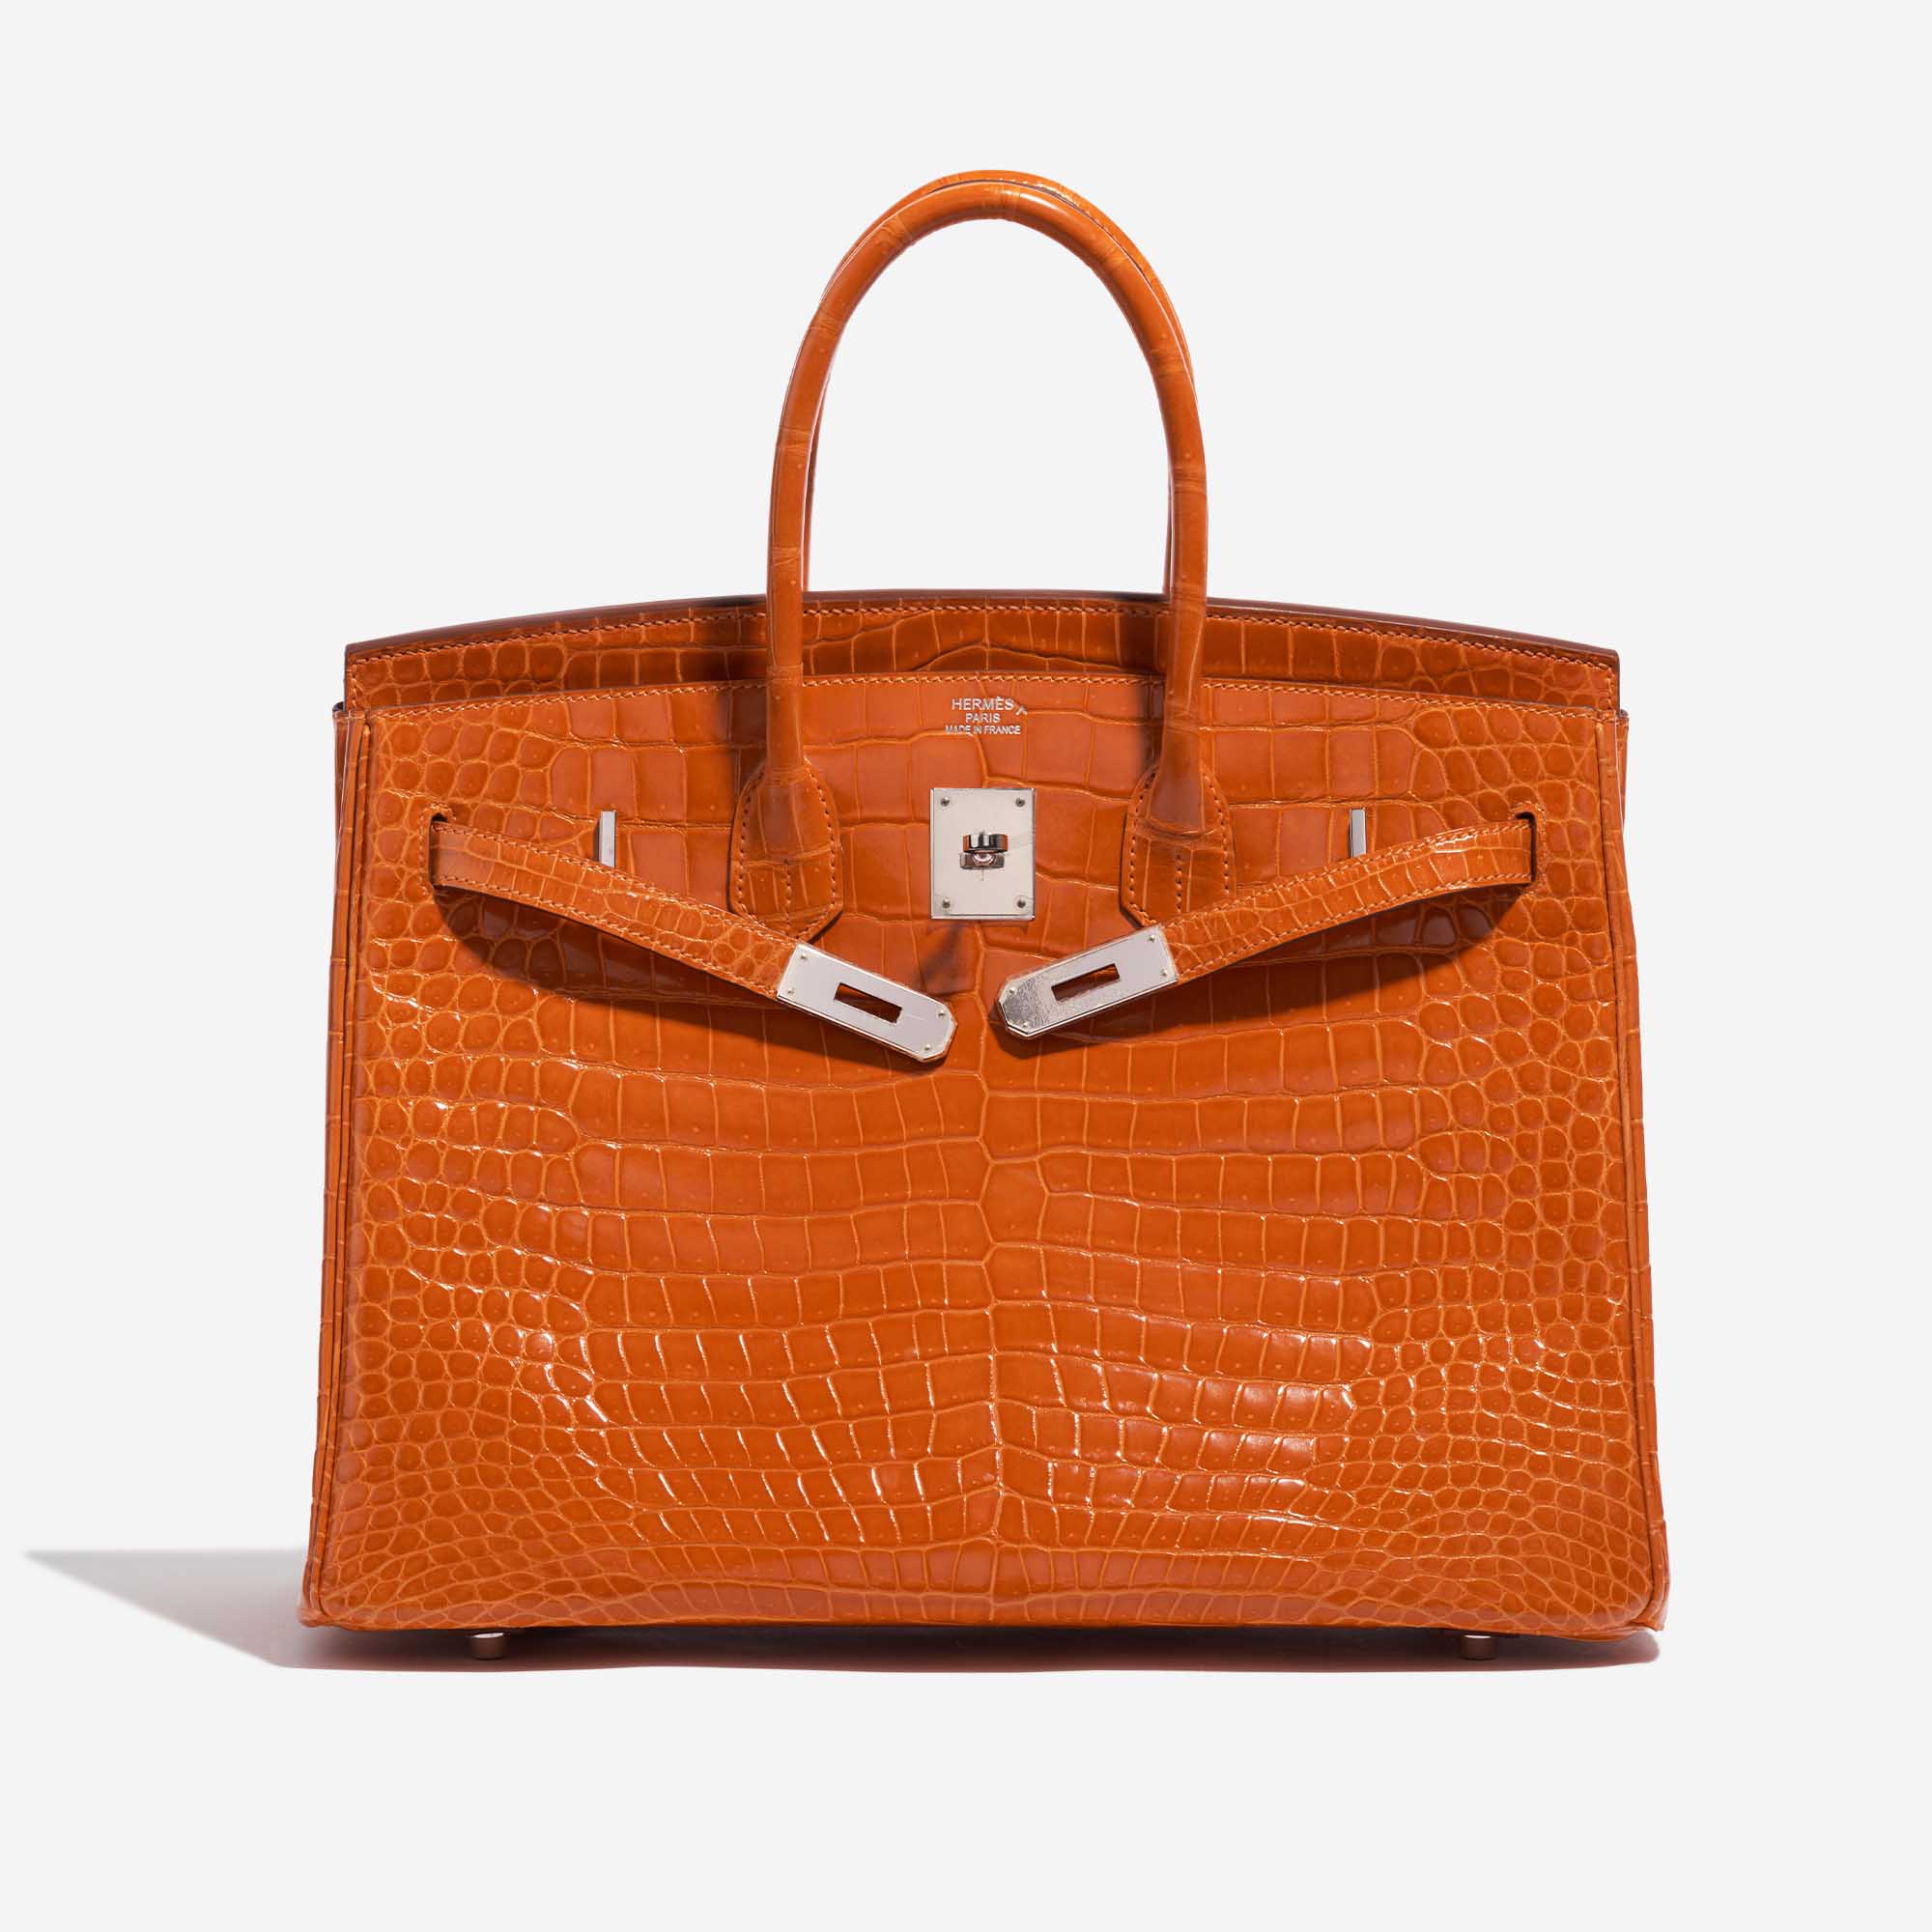 Pre-owned Hermès bag Birkin 35 Porosus Crocodile Pain d’épice Orange Front Open | Sell your designer bag on Saclab.com